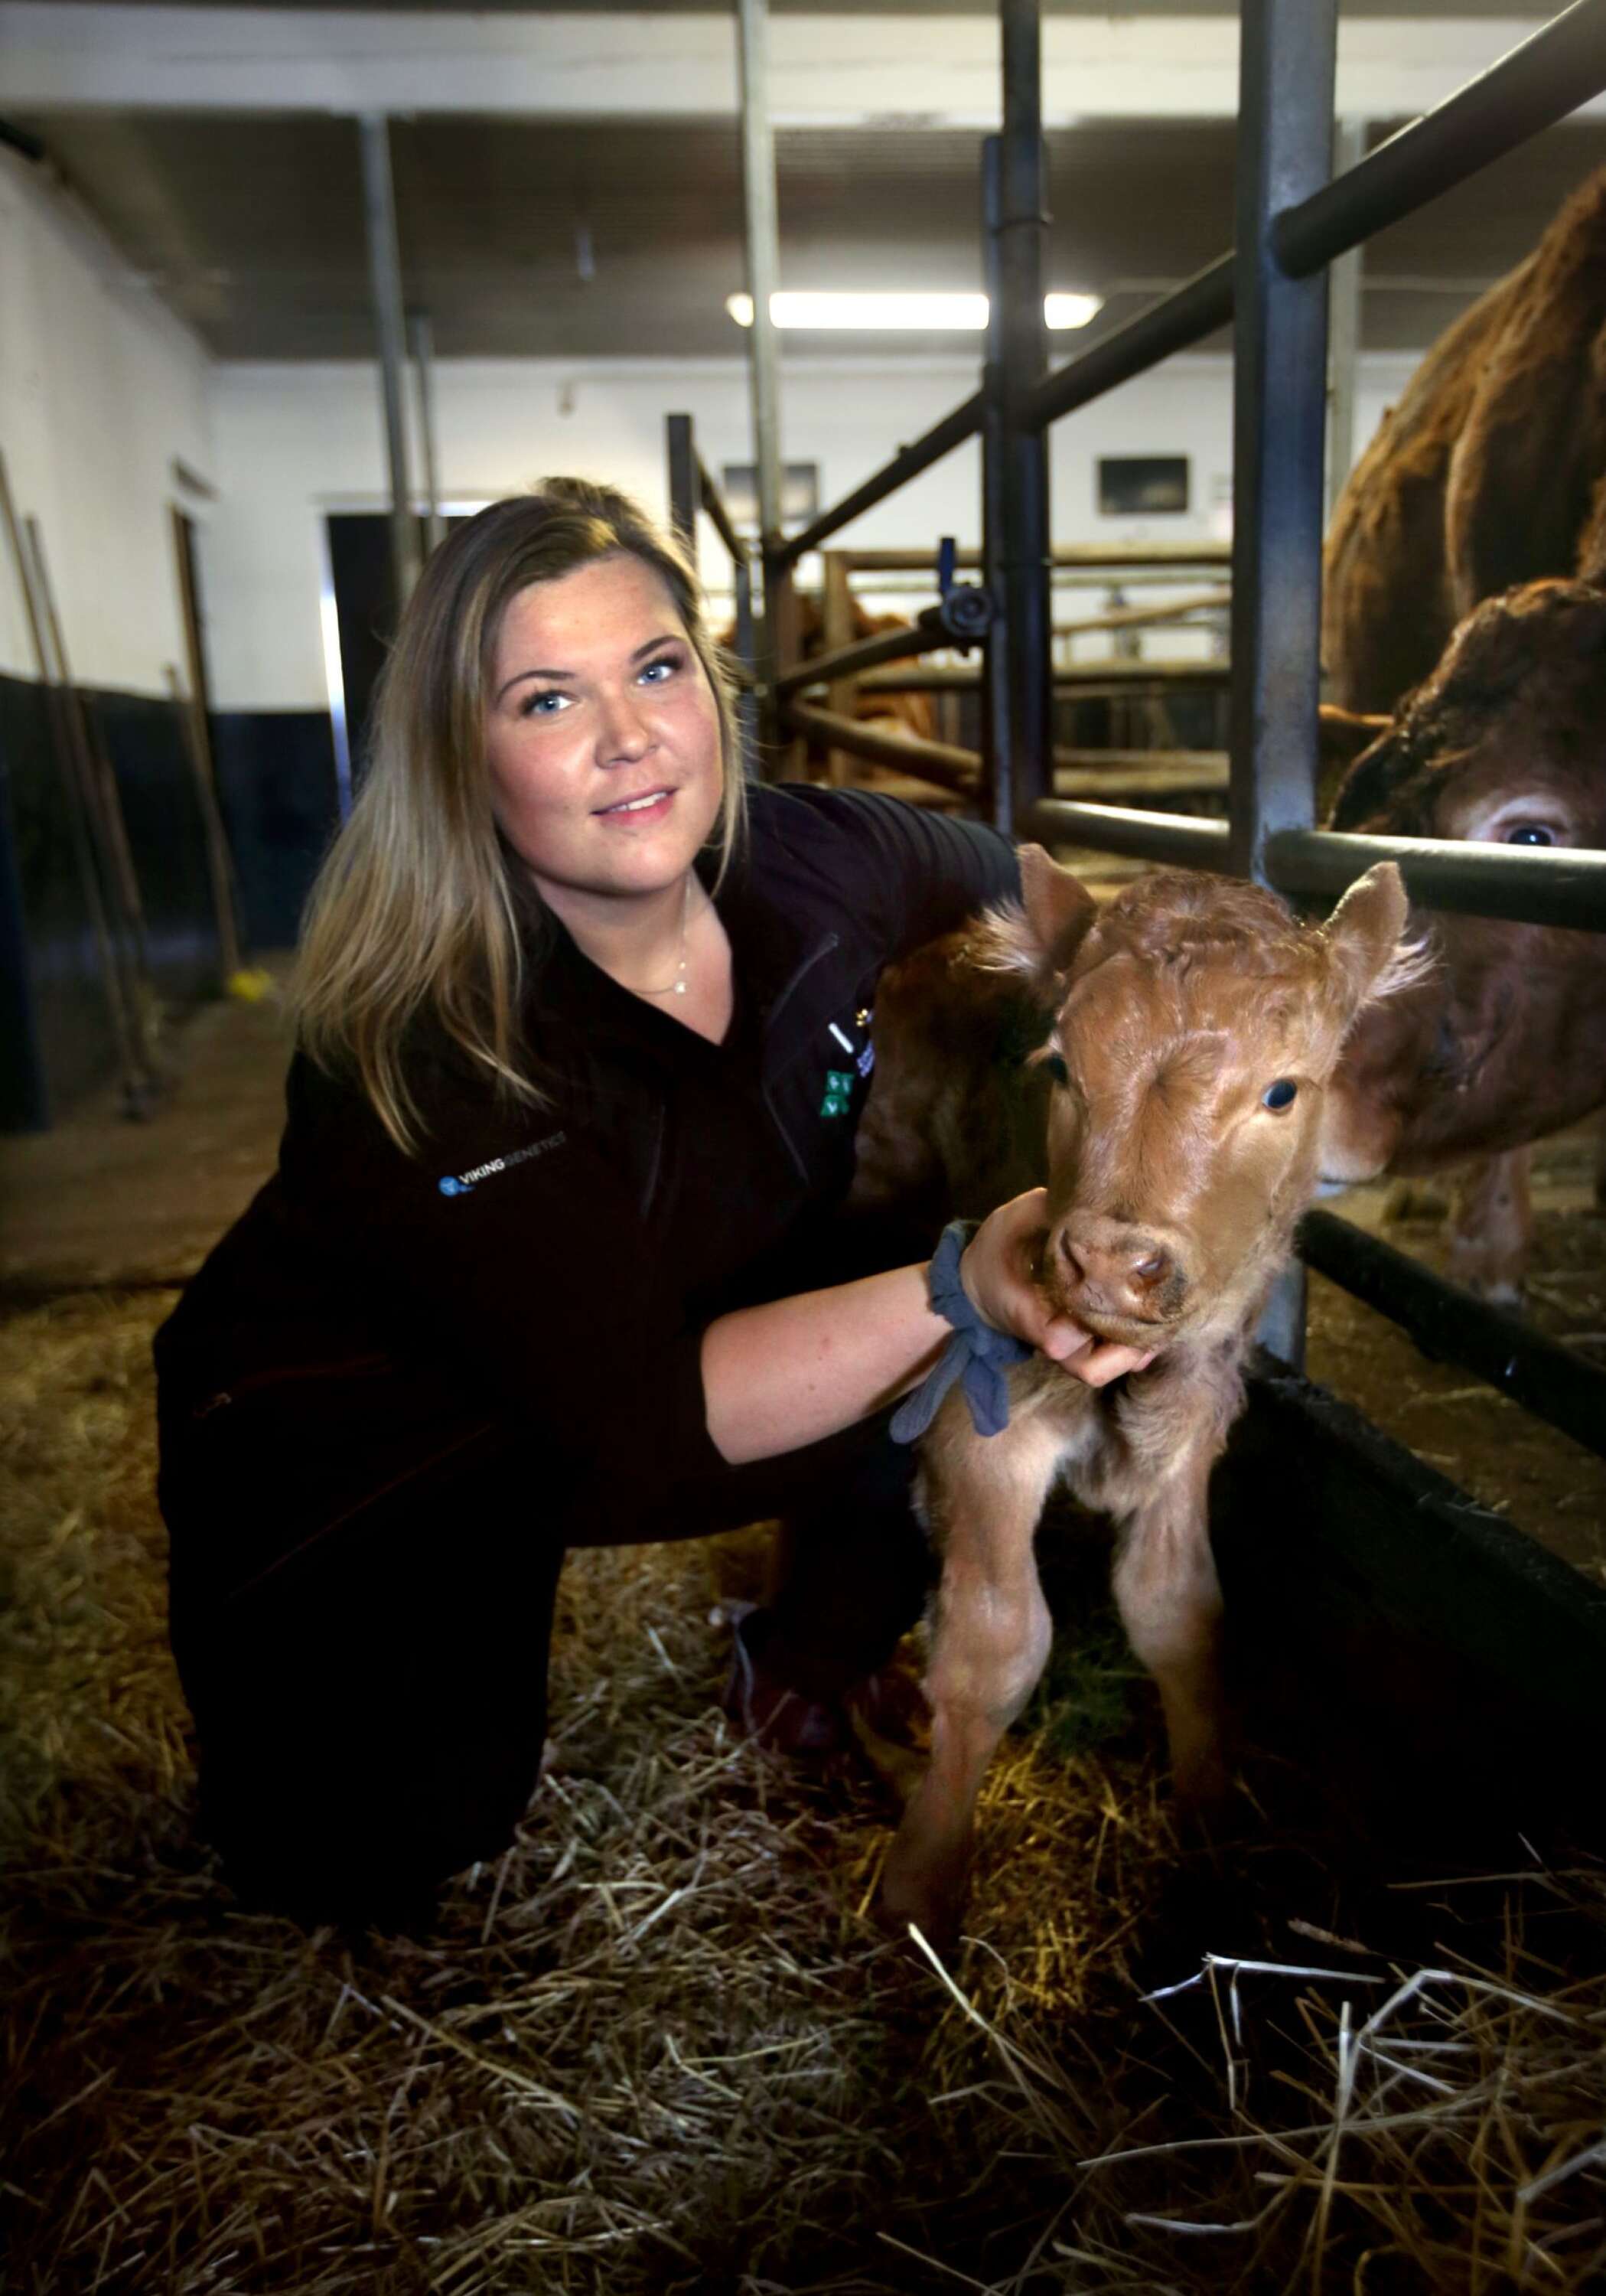 Jonna Didrikssons största intresse är kor. Första jobbet var på en mjölkgård. Nu arbetar hon med koavel.